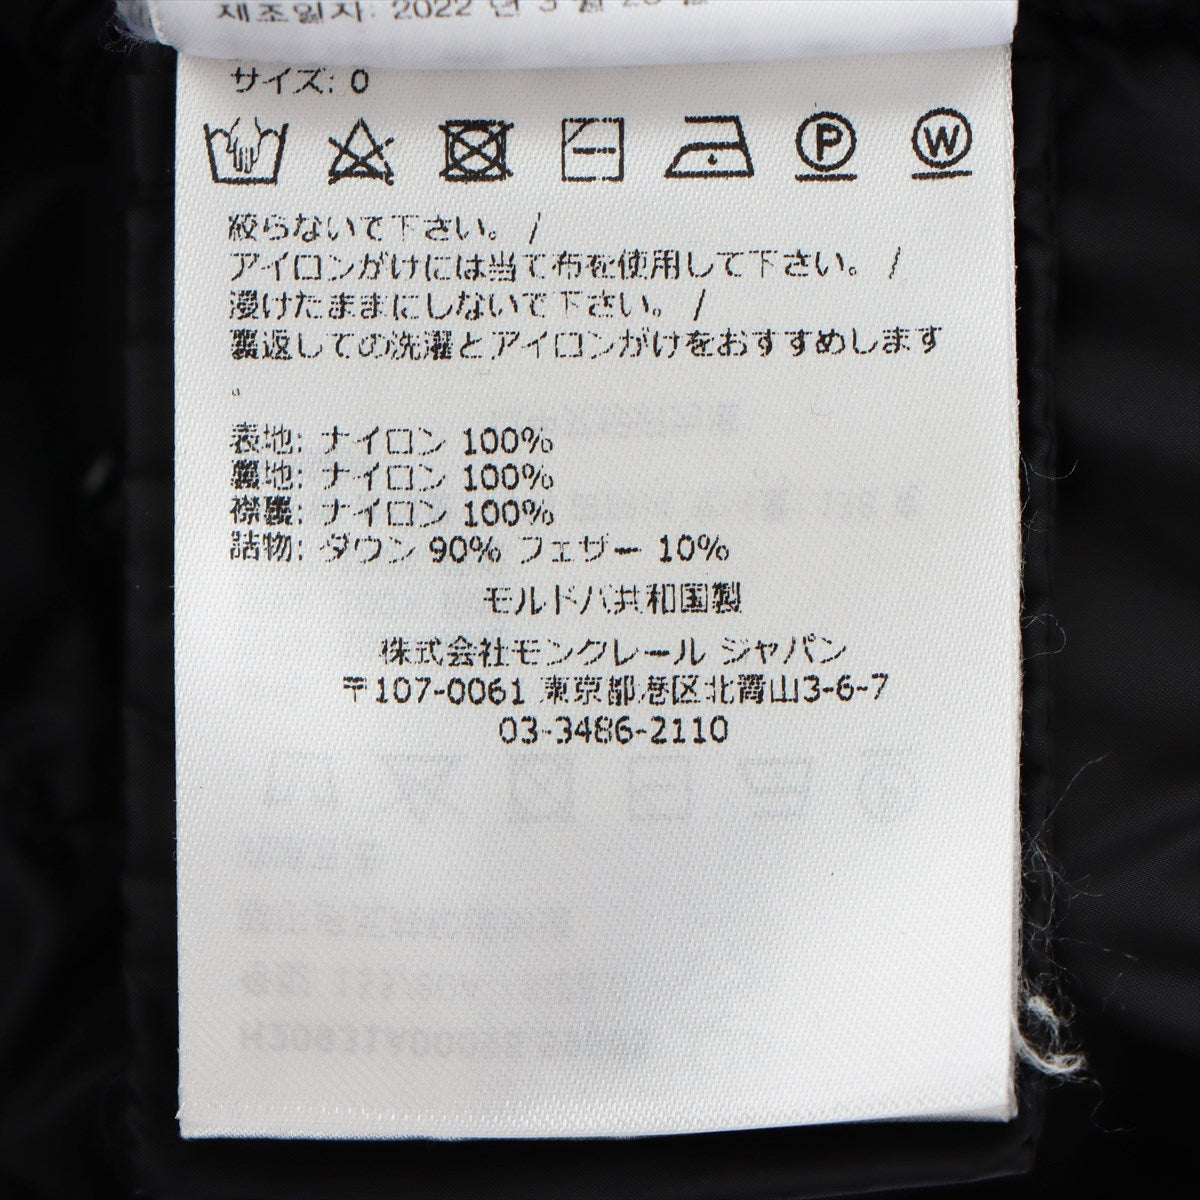 くろろレディース3-DK008 国内正規 モンクレール ダウンジャケット レディース